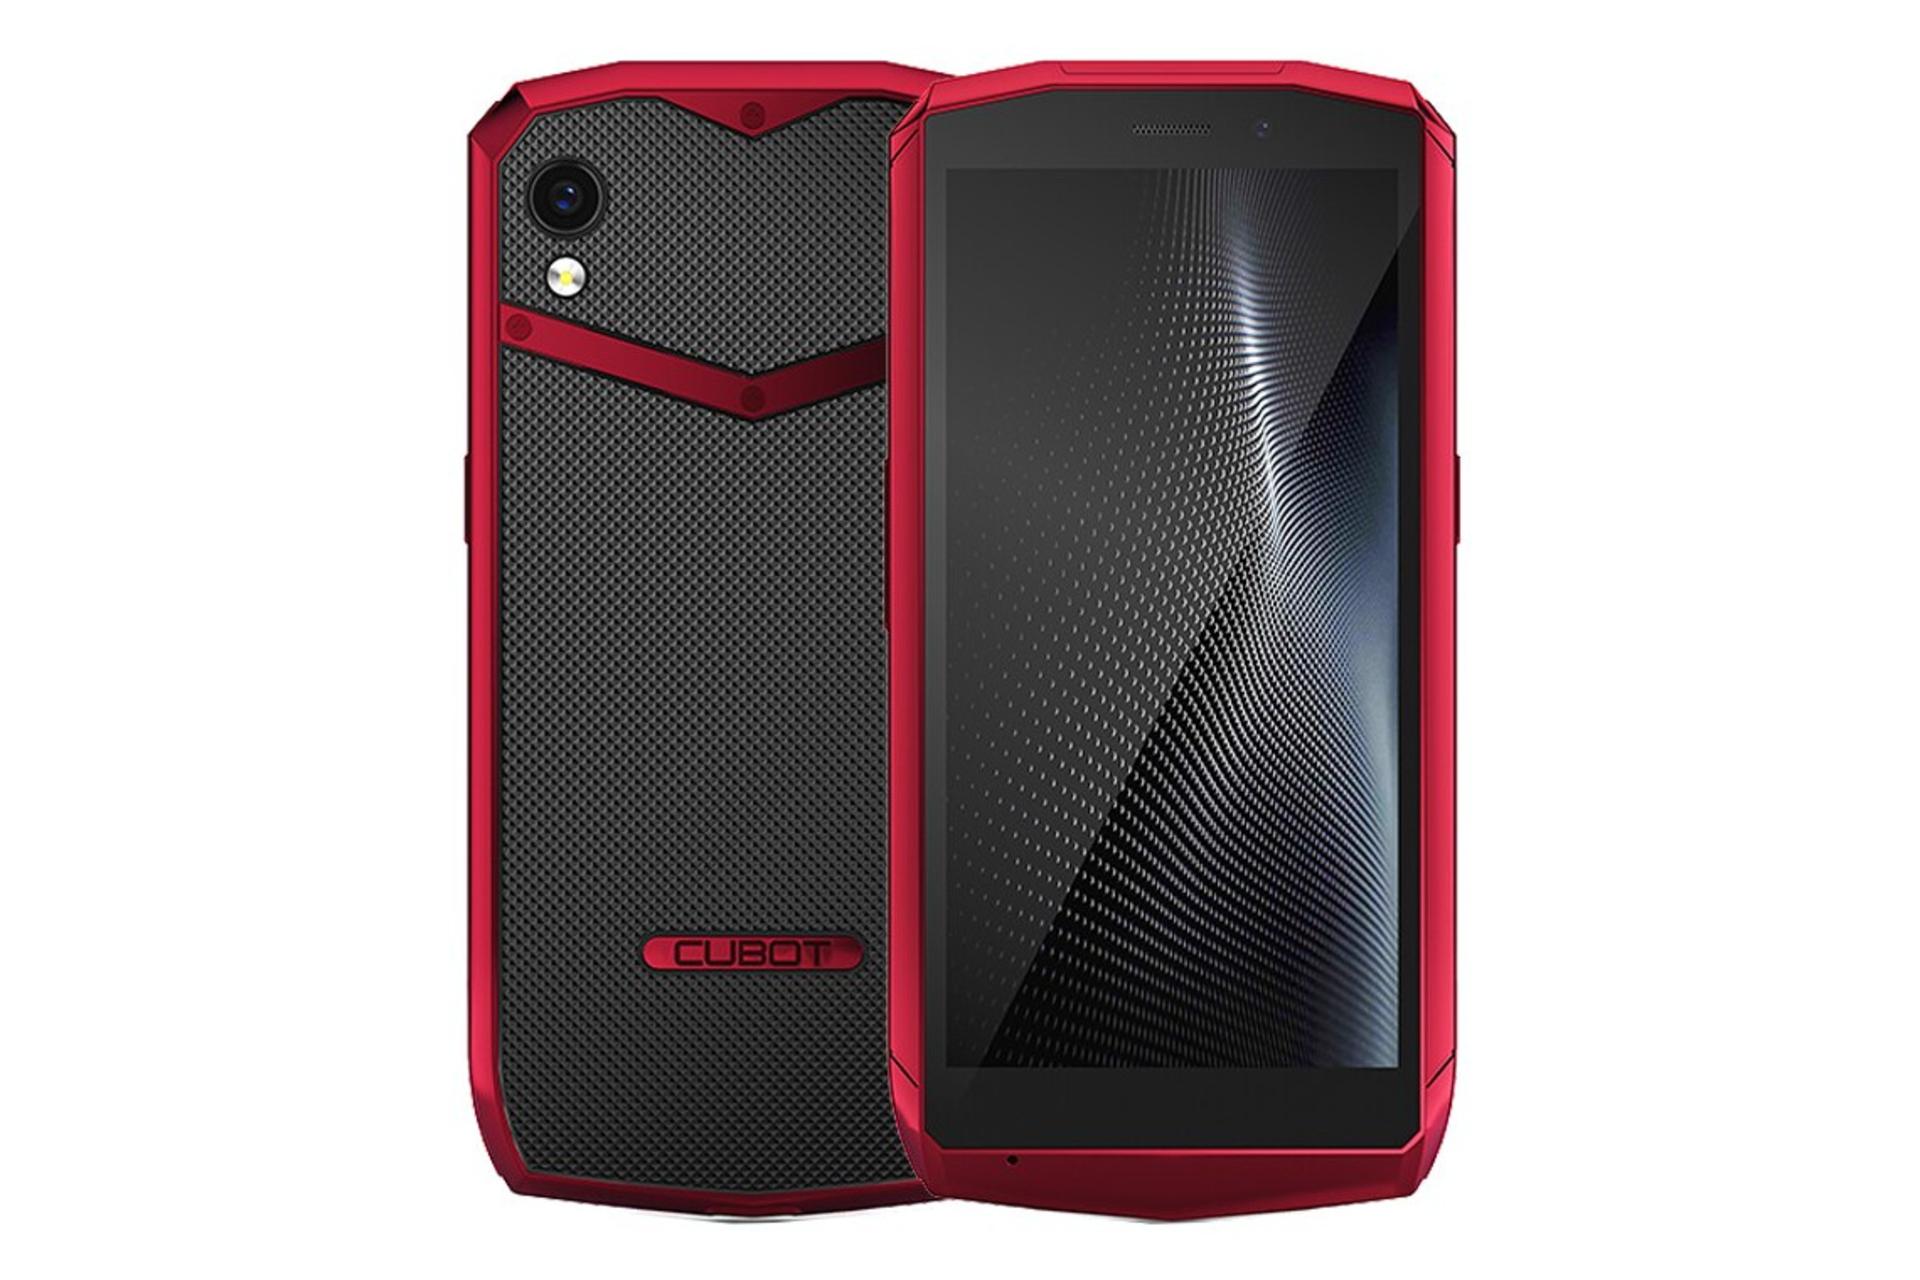 گوشی موبایل کوبوت پاکت / CUBOT Pocket قرمز